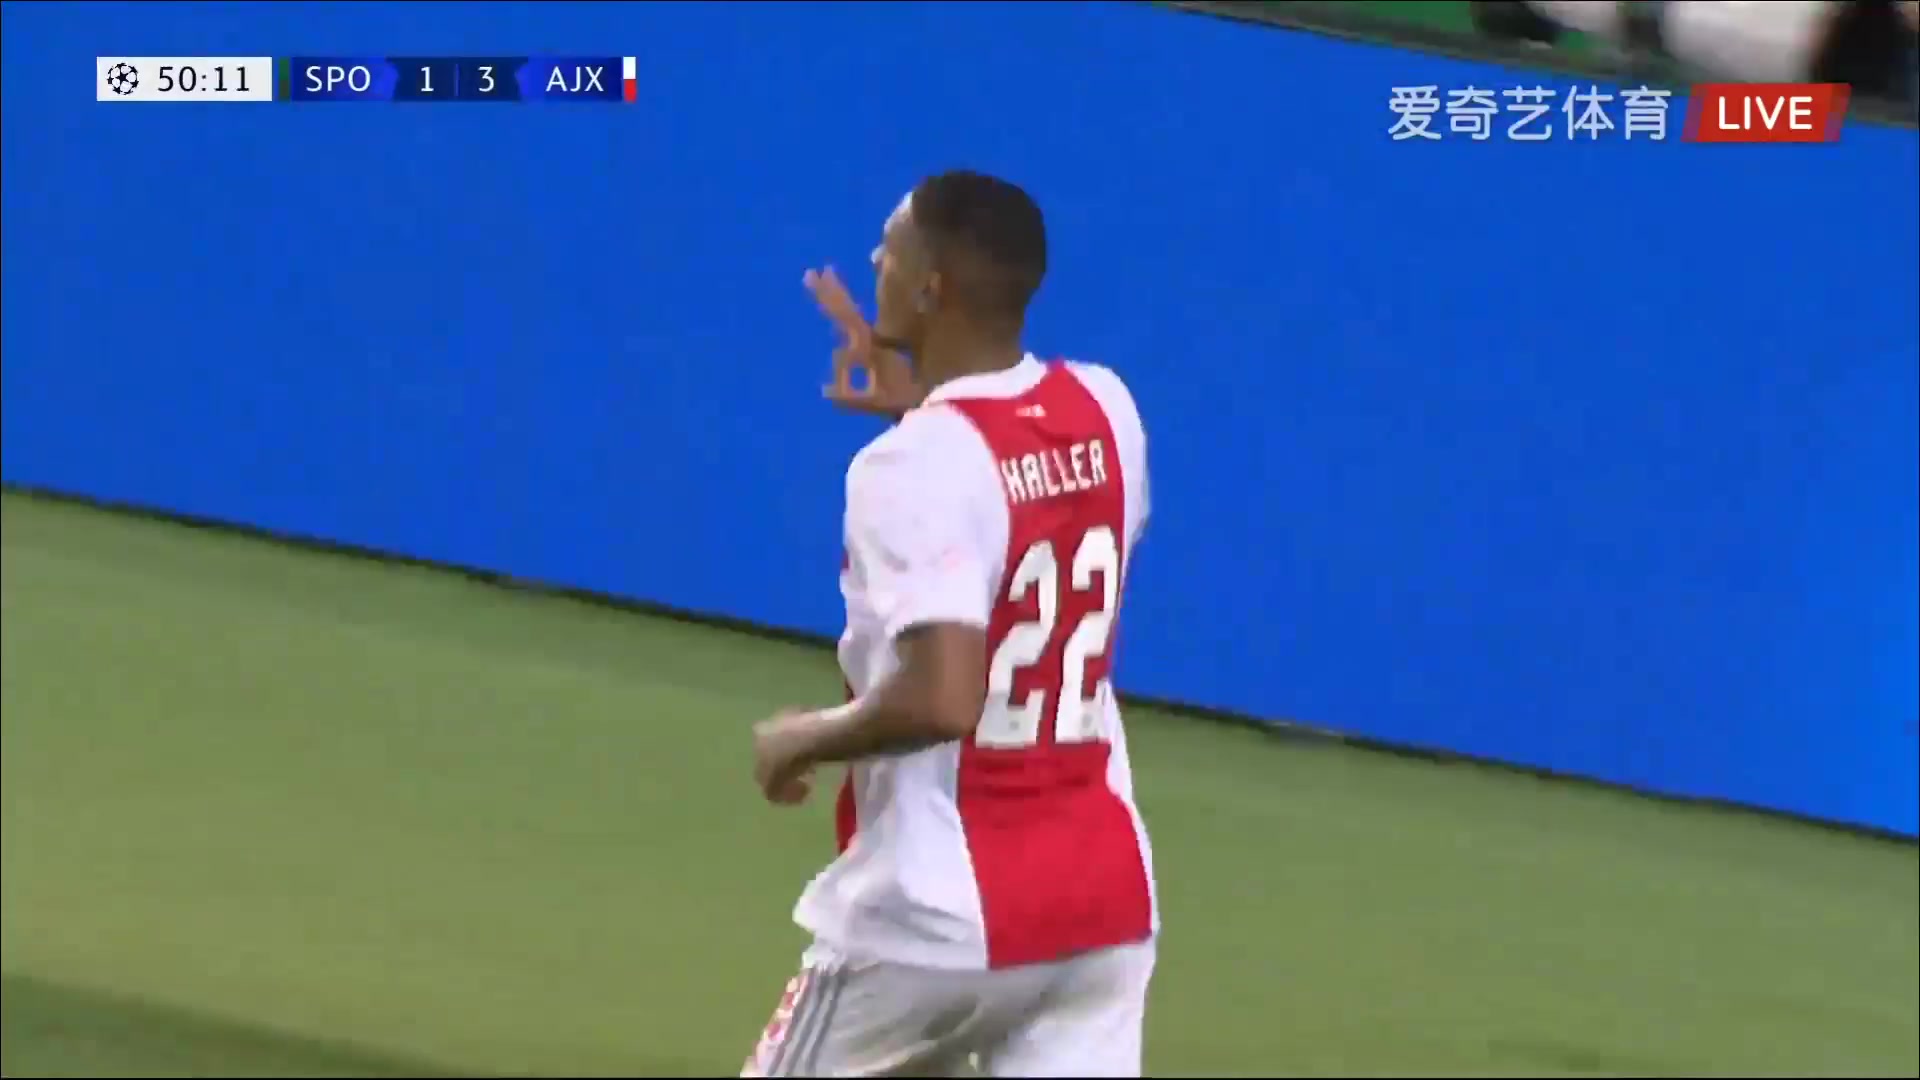 UEFA CL Sporting CP Vs AFC Ajax  Goal in 47 min, Score 2:3